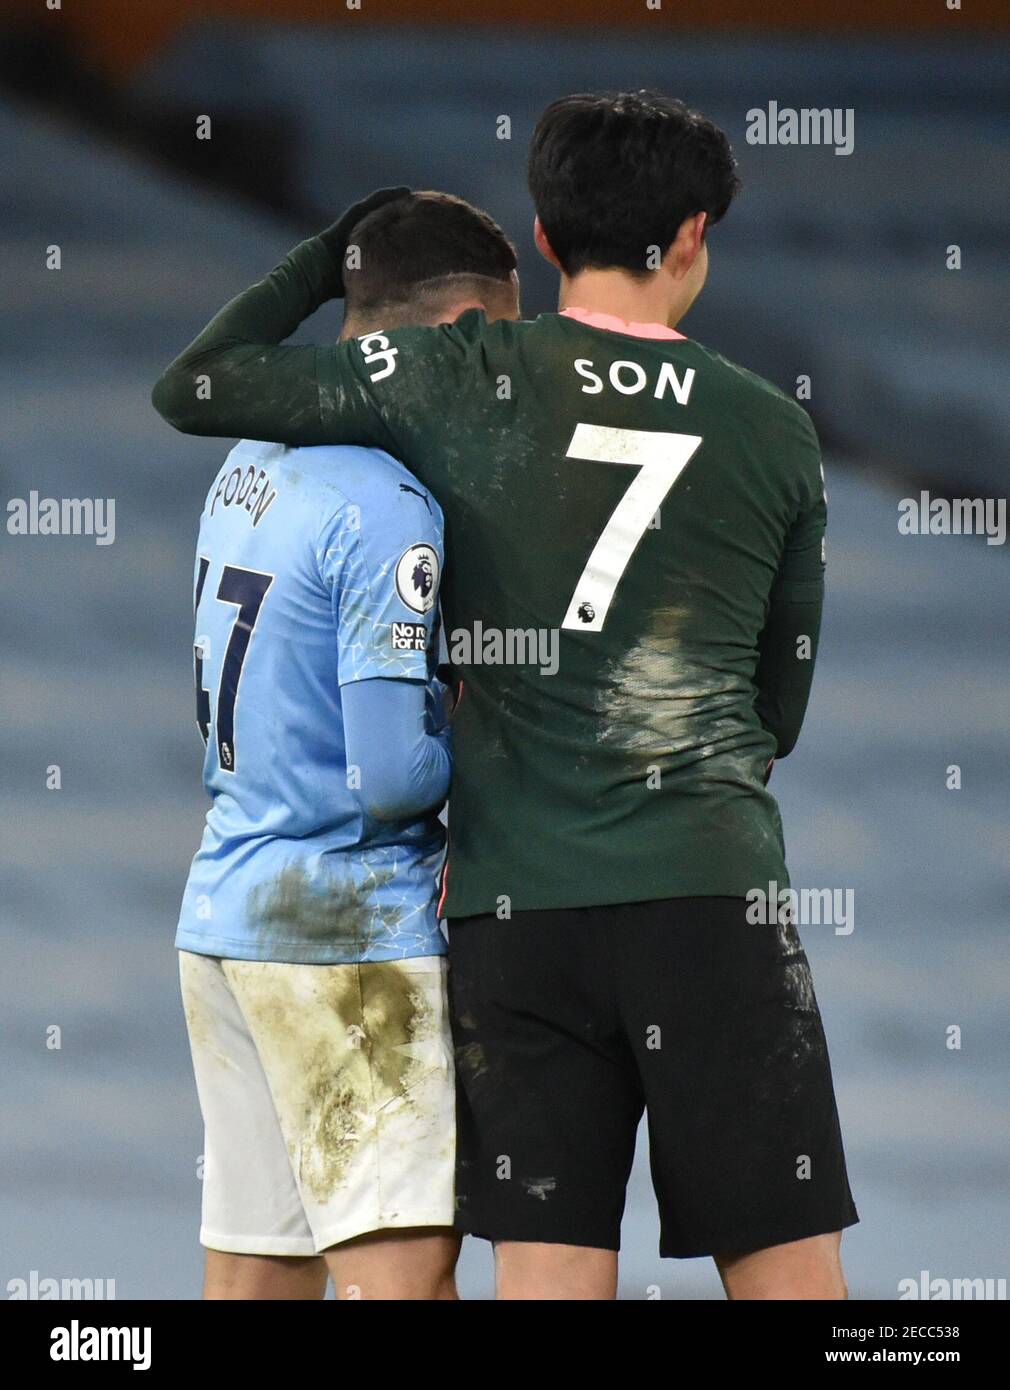 Phil Foden von Manchester City (links) umarmt Tottenham Hotspurs Son Heung-min nach dem Premier League-Spiel im Etihad Stadium in Manchester. Bilddatum: Samstag, 13. Februar 2021. Stockfoto